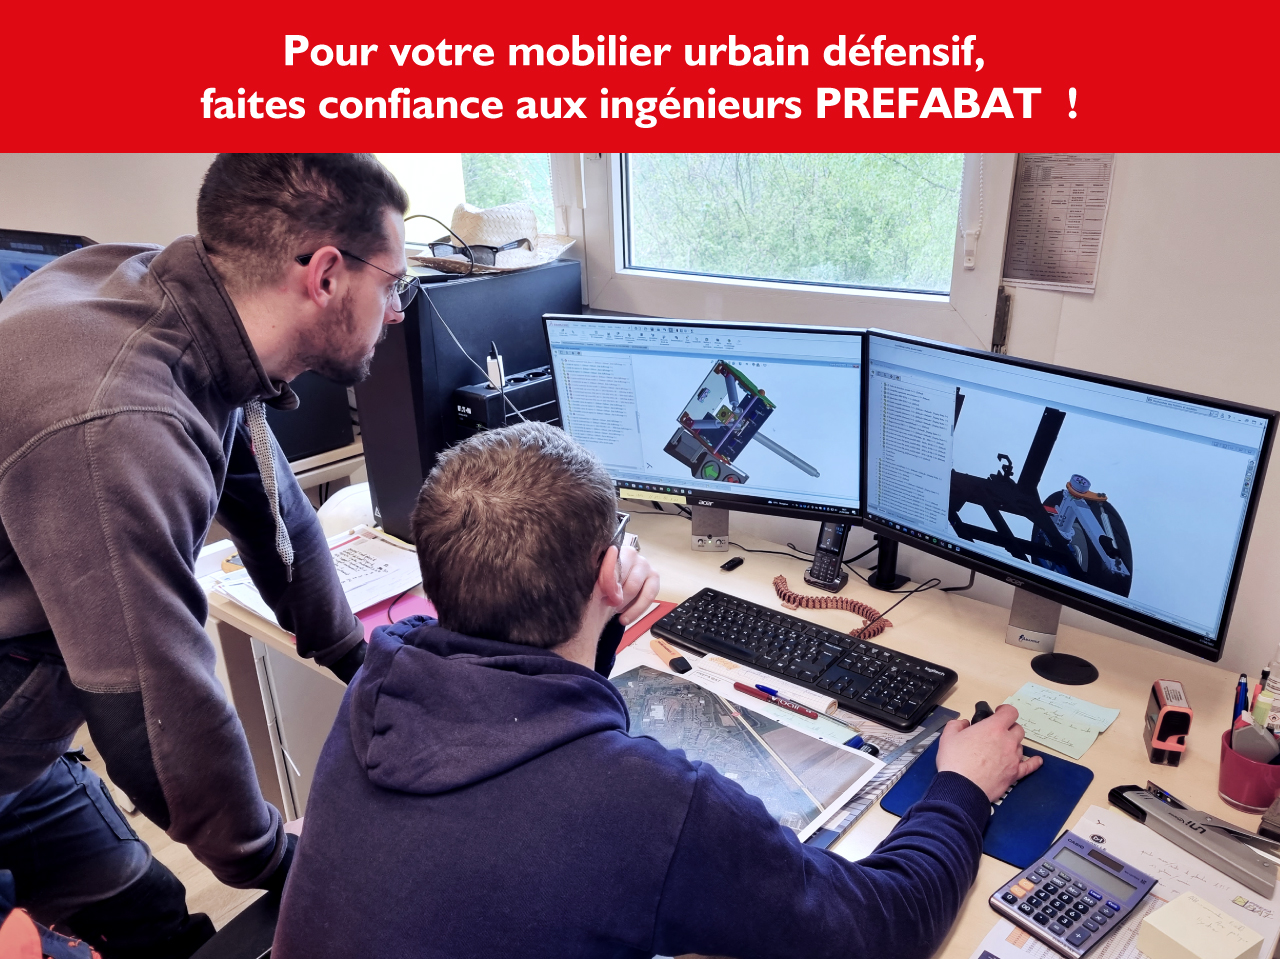 Pour votre mobilier urbain défensif, faites confiance aux ingénieurs PREFABAT !